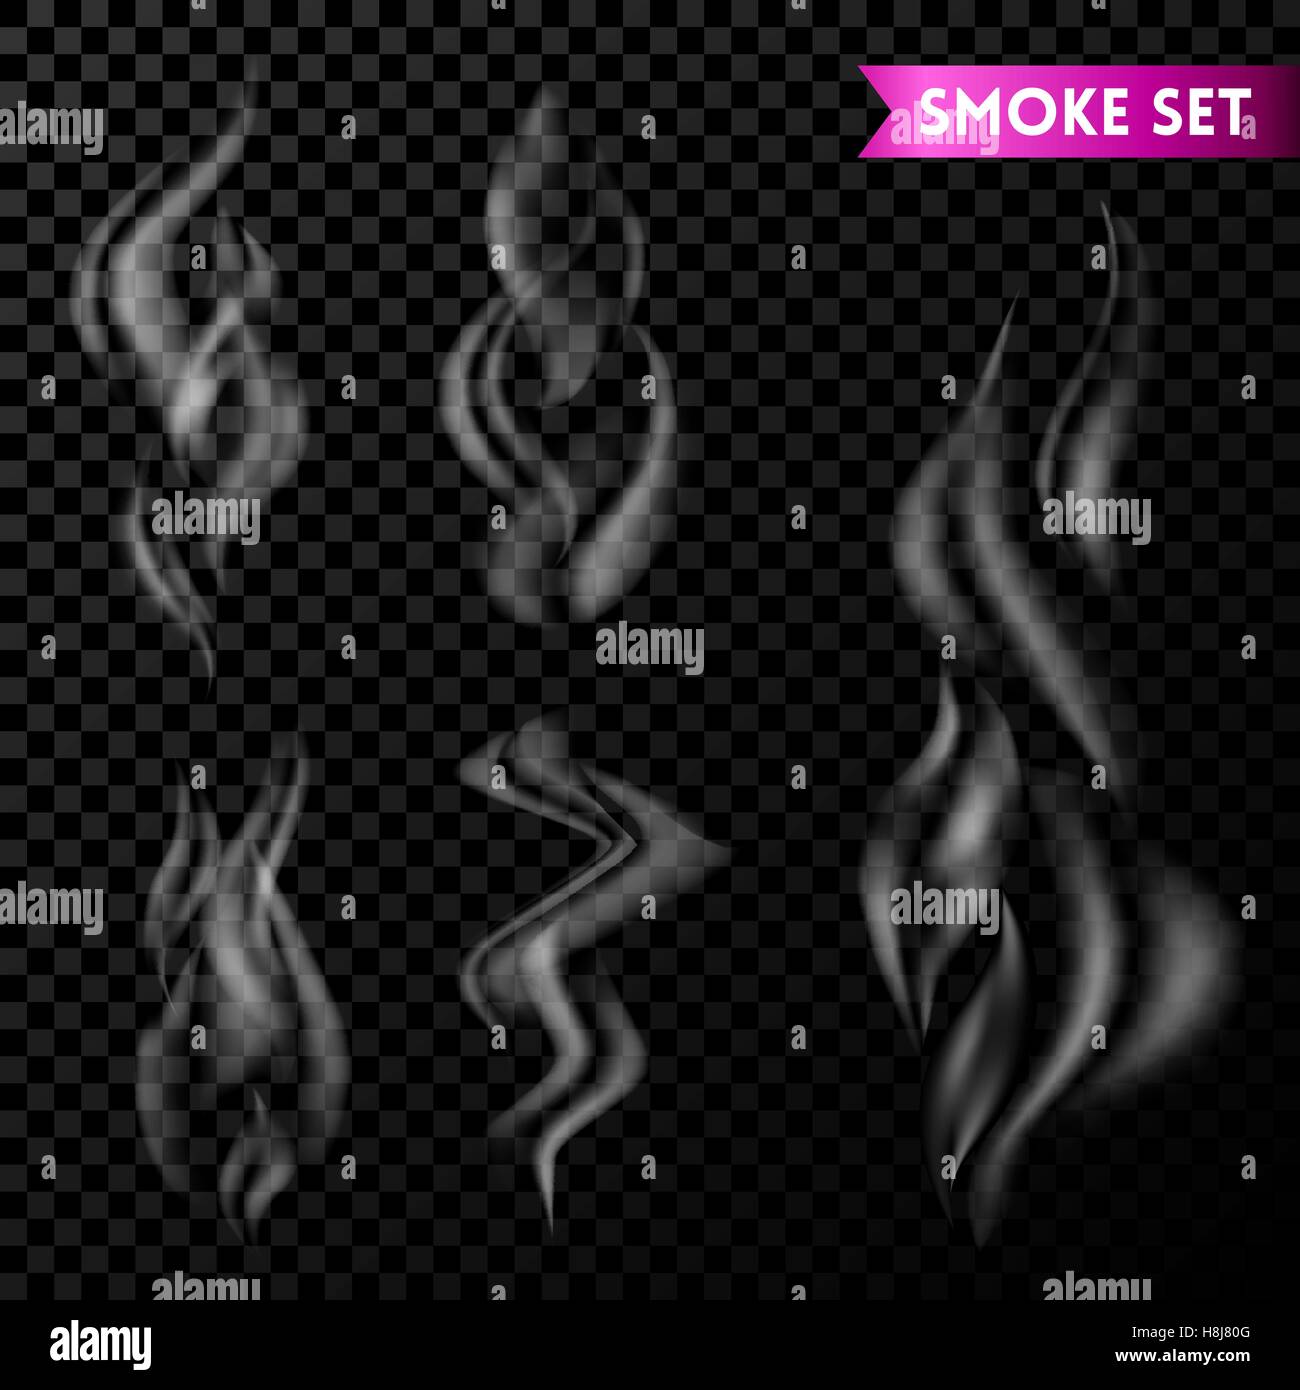 Rauchen Sie isoliert. Vektor Rauch. Rauchen Sie auf transparenten Hintergrund. Satz zu rauchen. 5 verschiedene isoliert Rauch. Zigarettenrauch Wellen. Stock Vektor